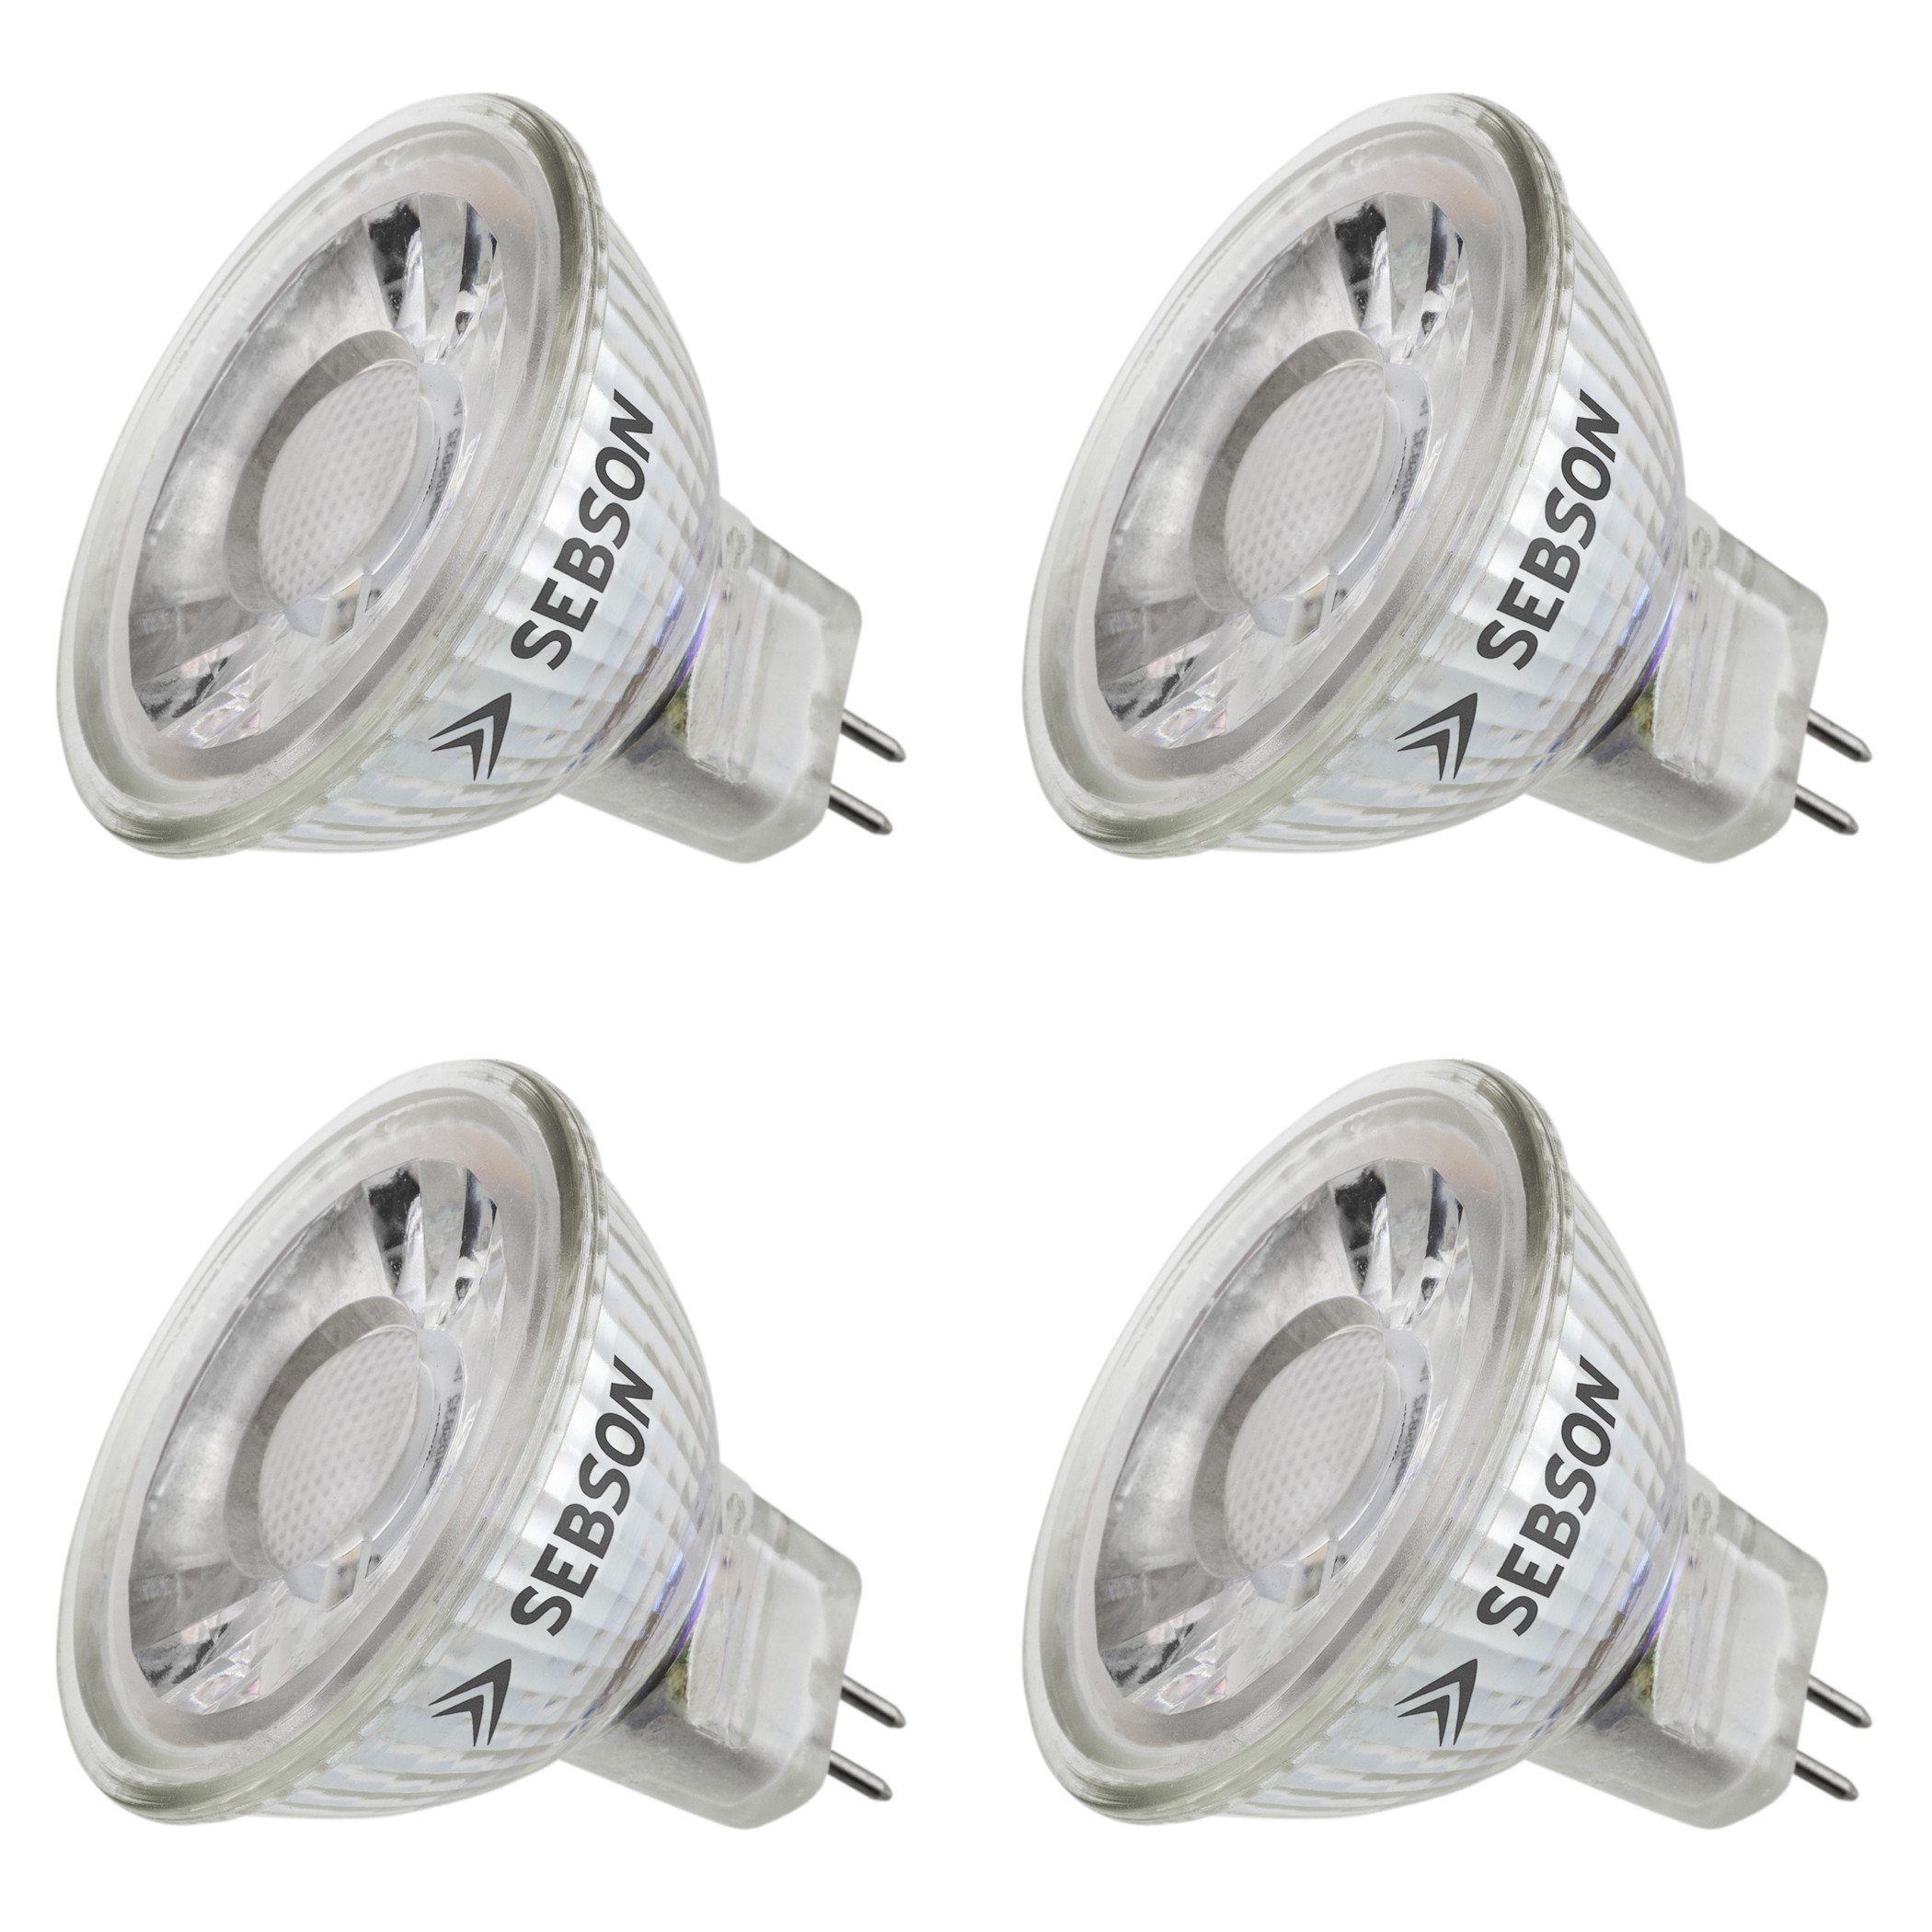 SEBSON LED Lampe GU5.3/ MR16 warmweiss 5W 420lm, LED Leuchtmittel Spot 36°,  12V DC, 4er Pack LED-Leuchtmittel